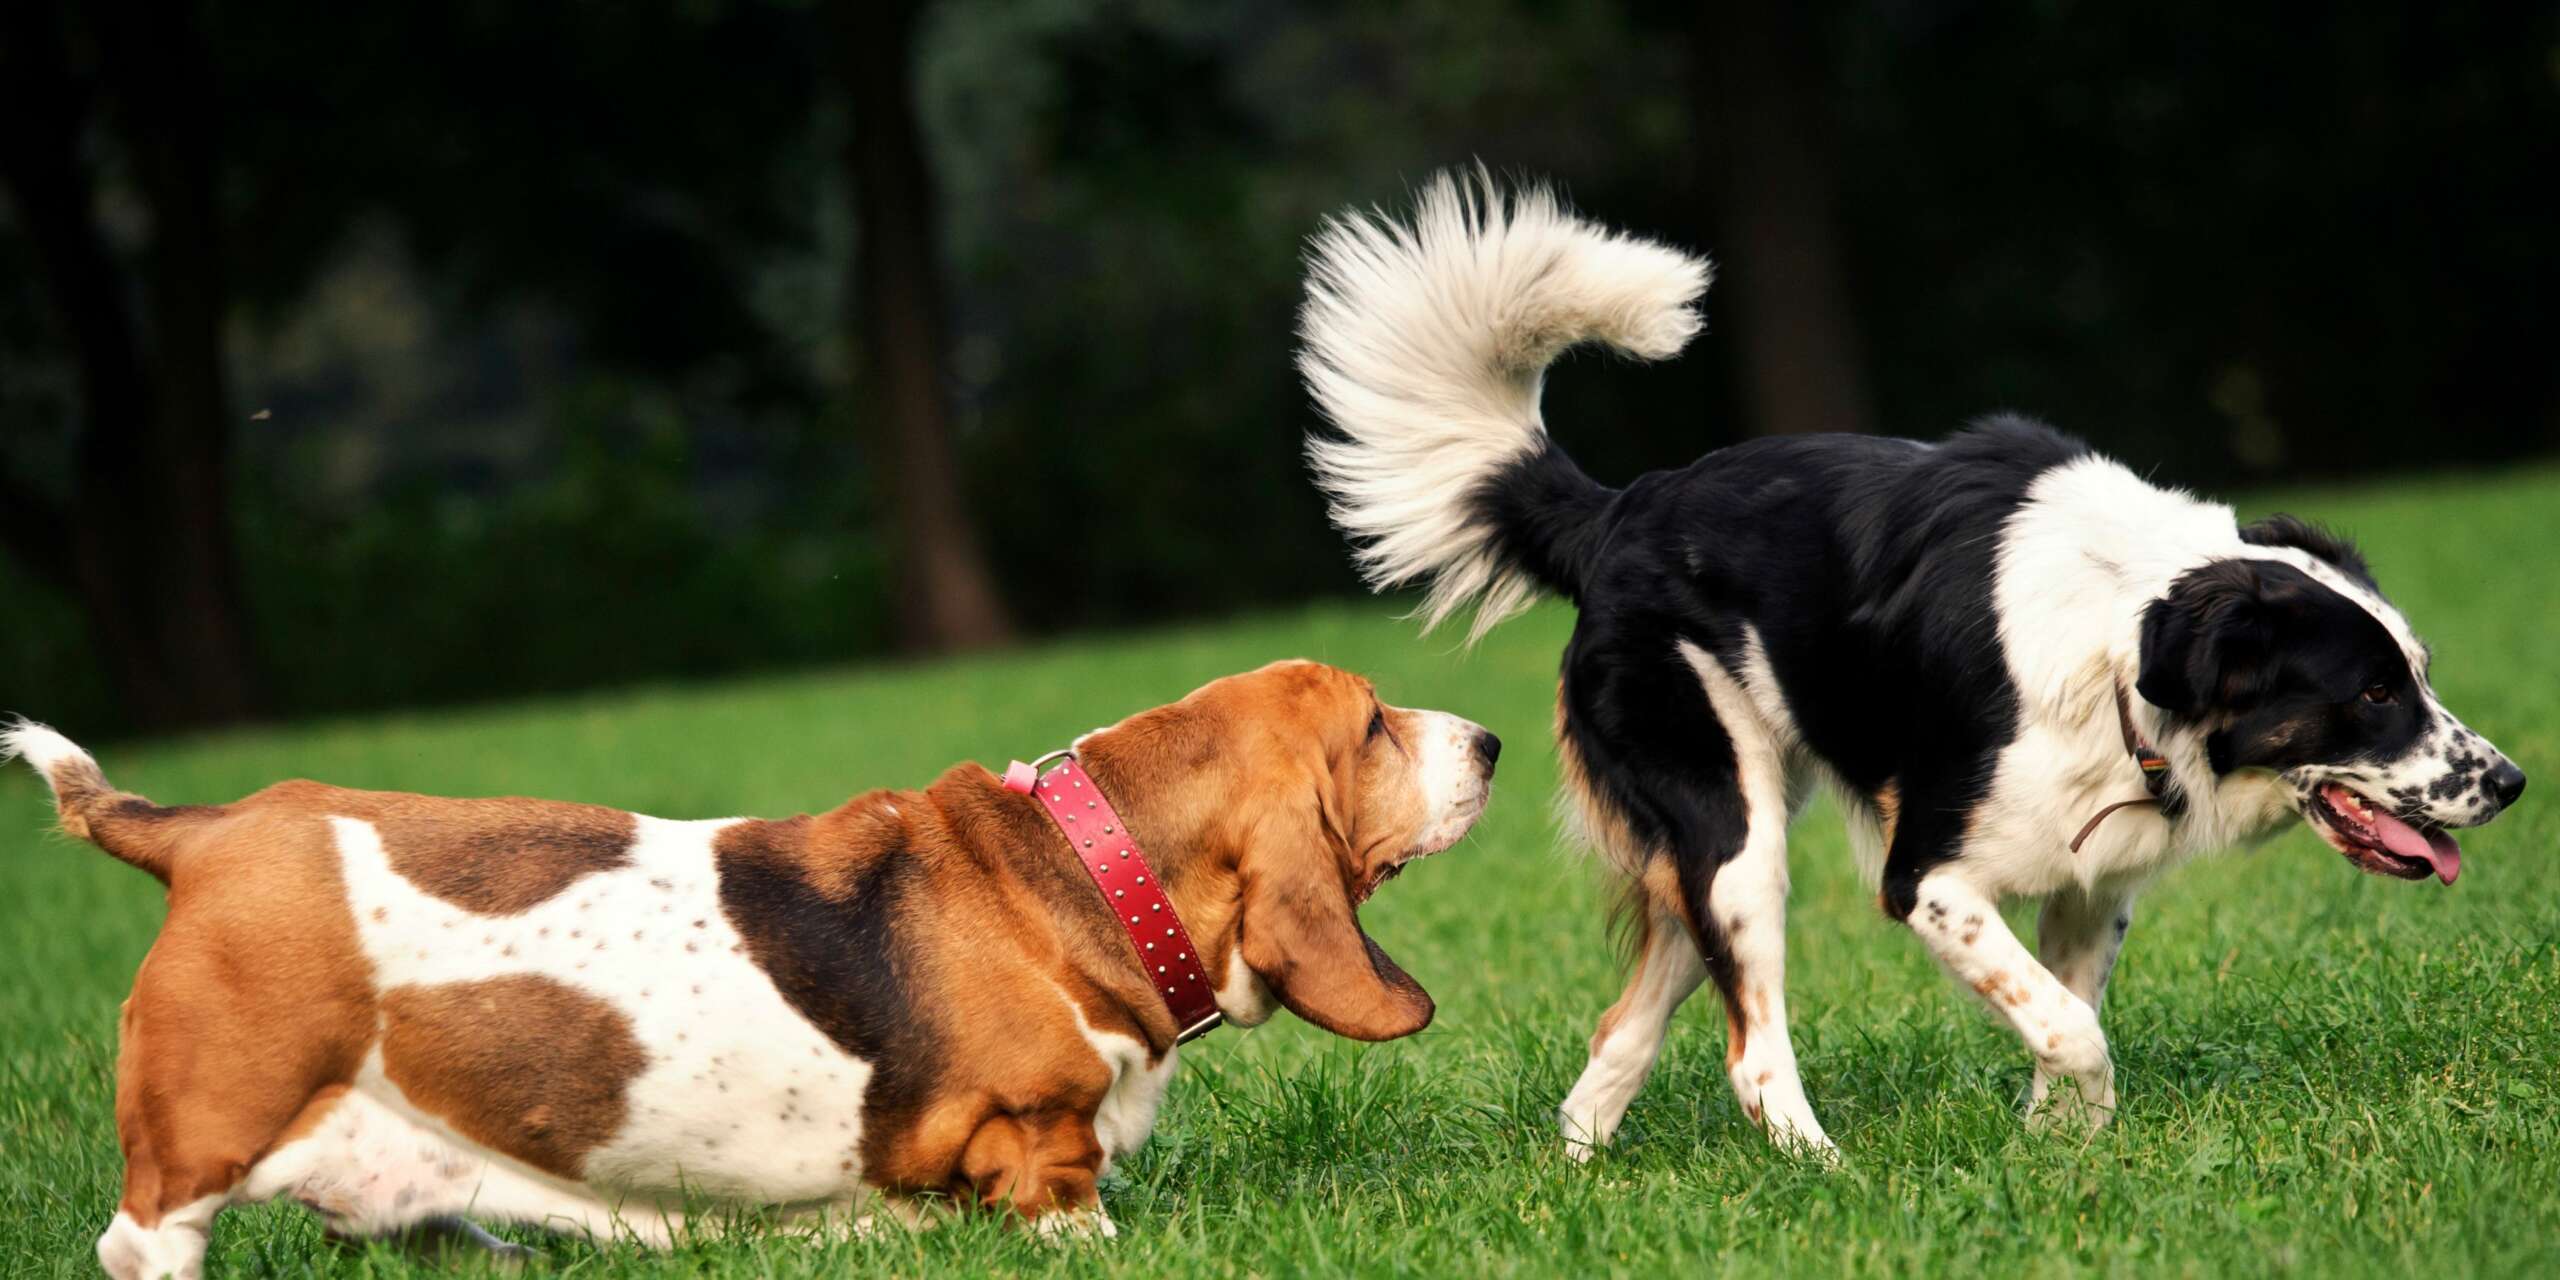 Alcuni fatti sorprendenti che non ti aspettavi sul senso dell'olfatto dei cani